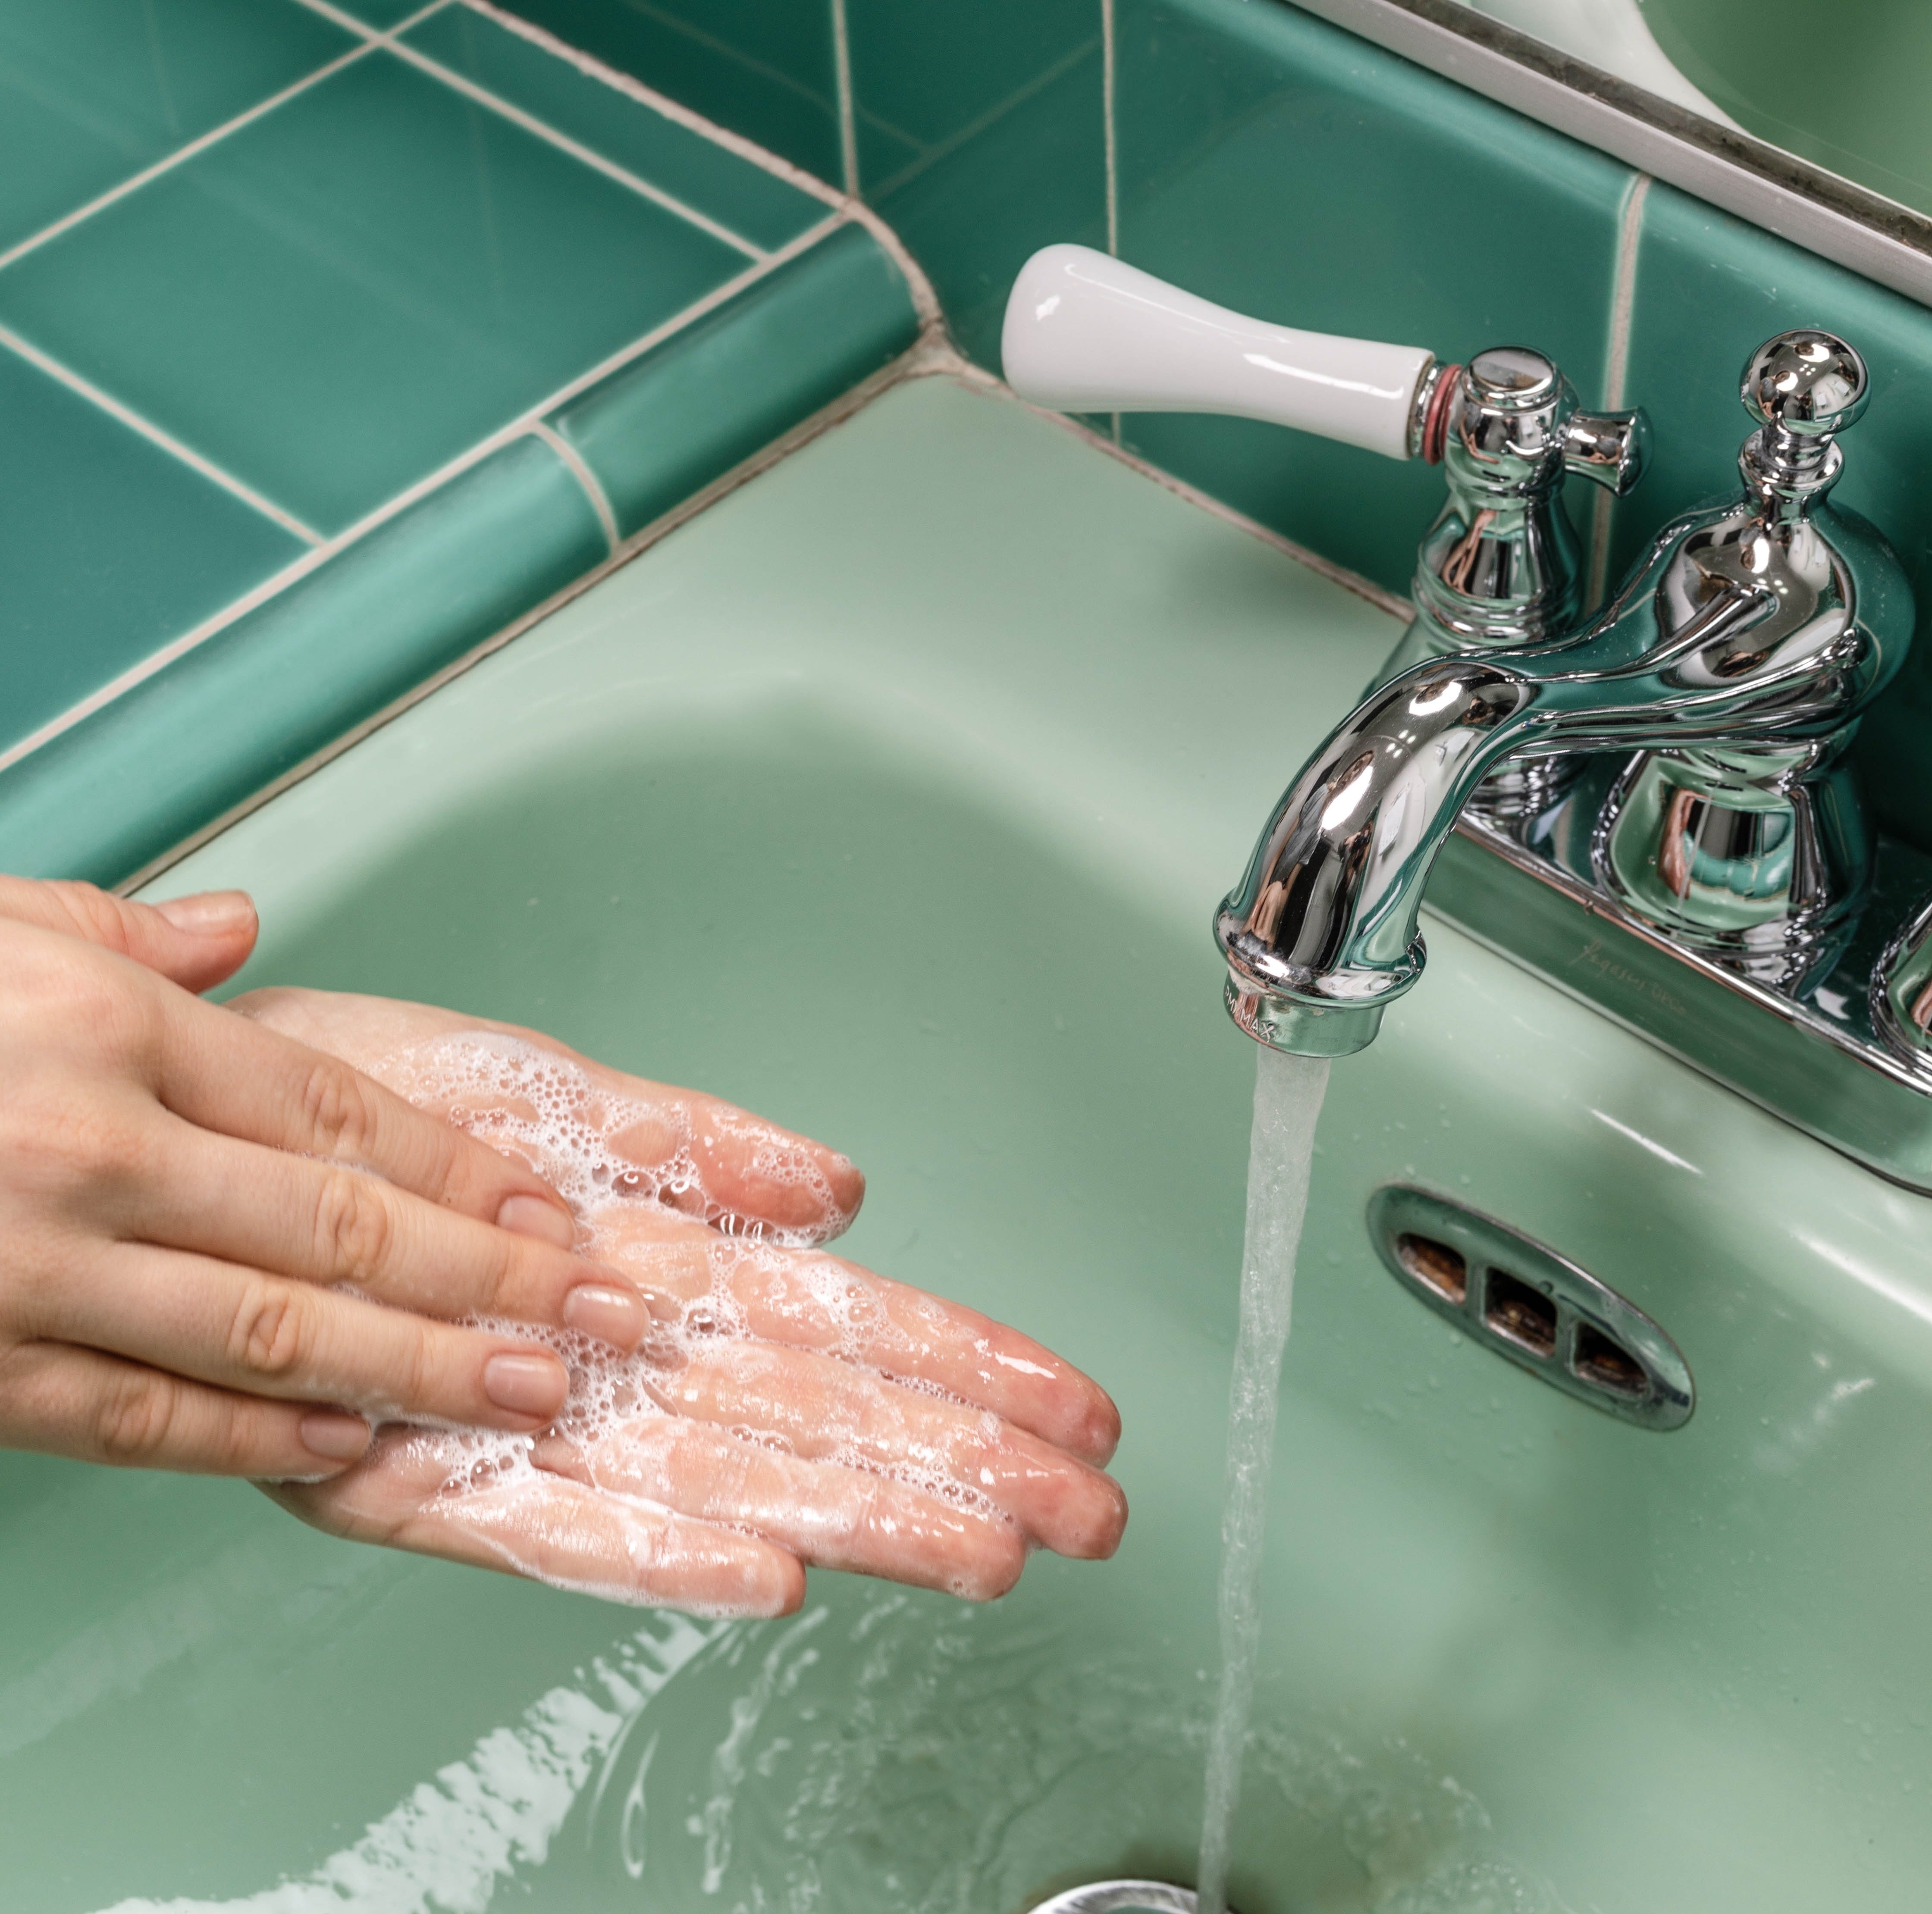 ¿Por qué es tan importante lavarse las manos por el coronavirus?